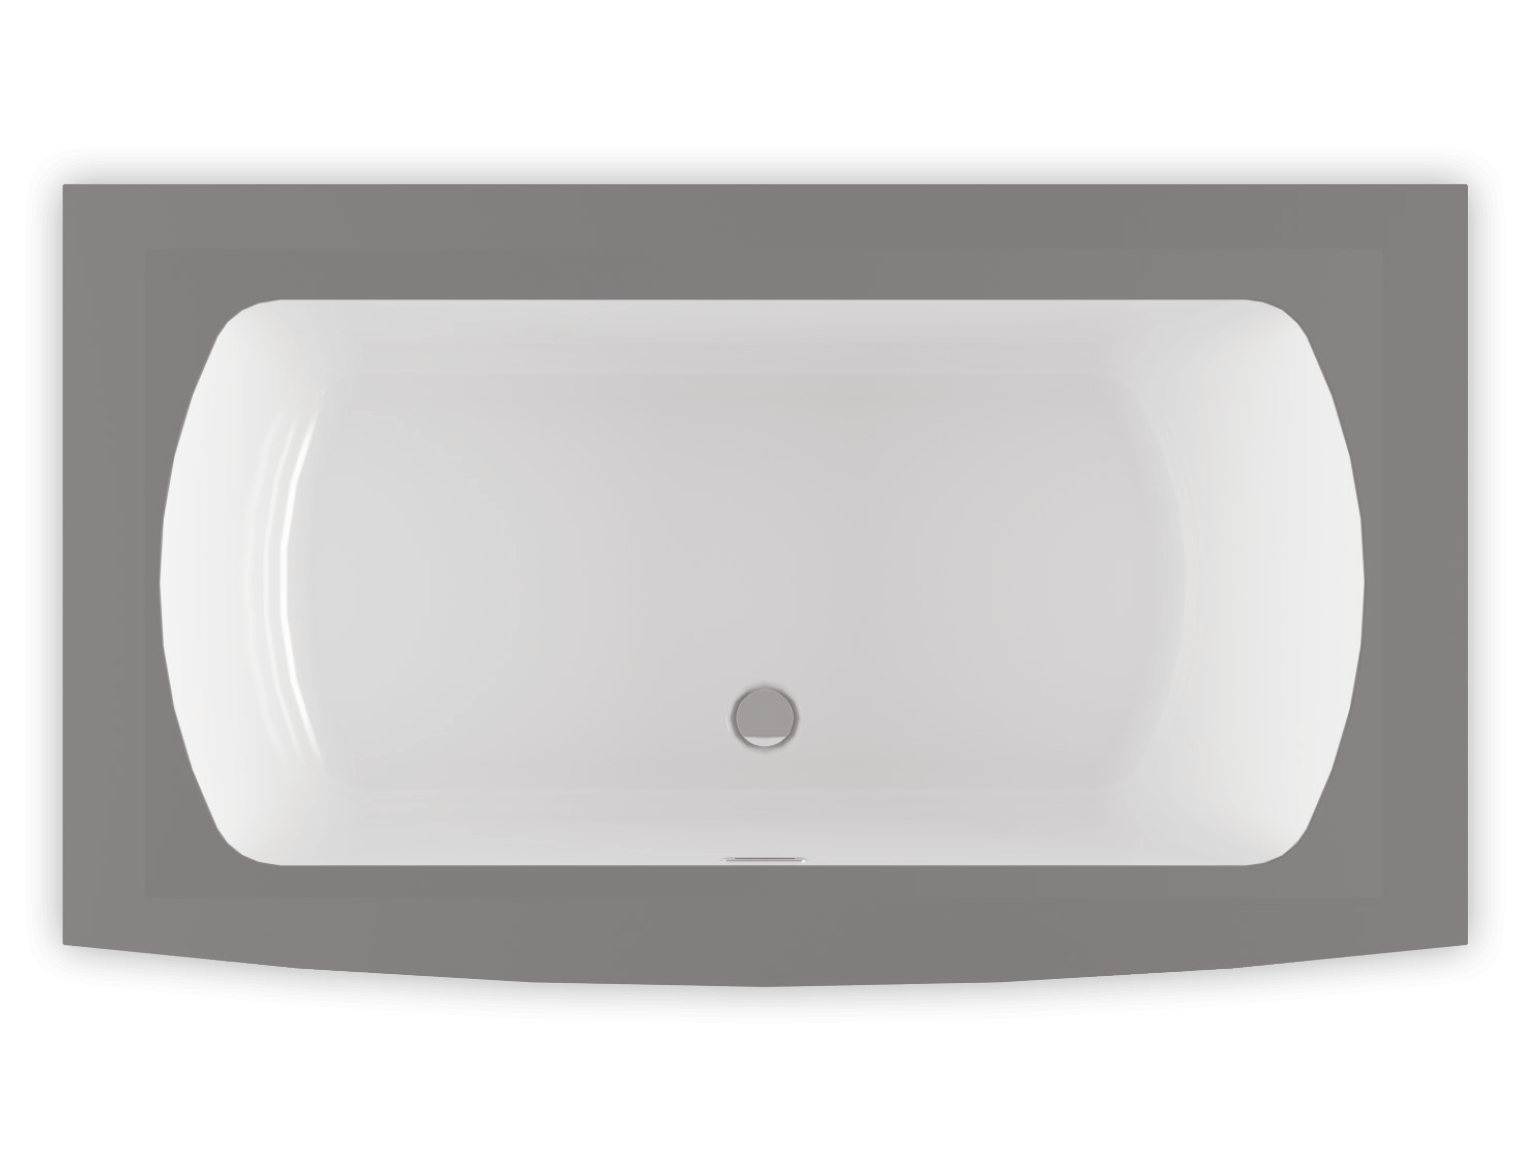 Monarch 6638F air jet bathtub for your modern bathroom